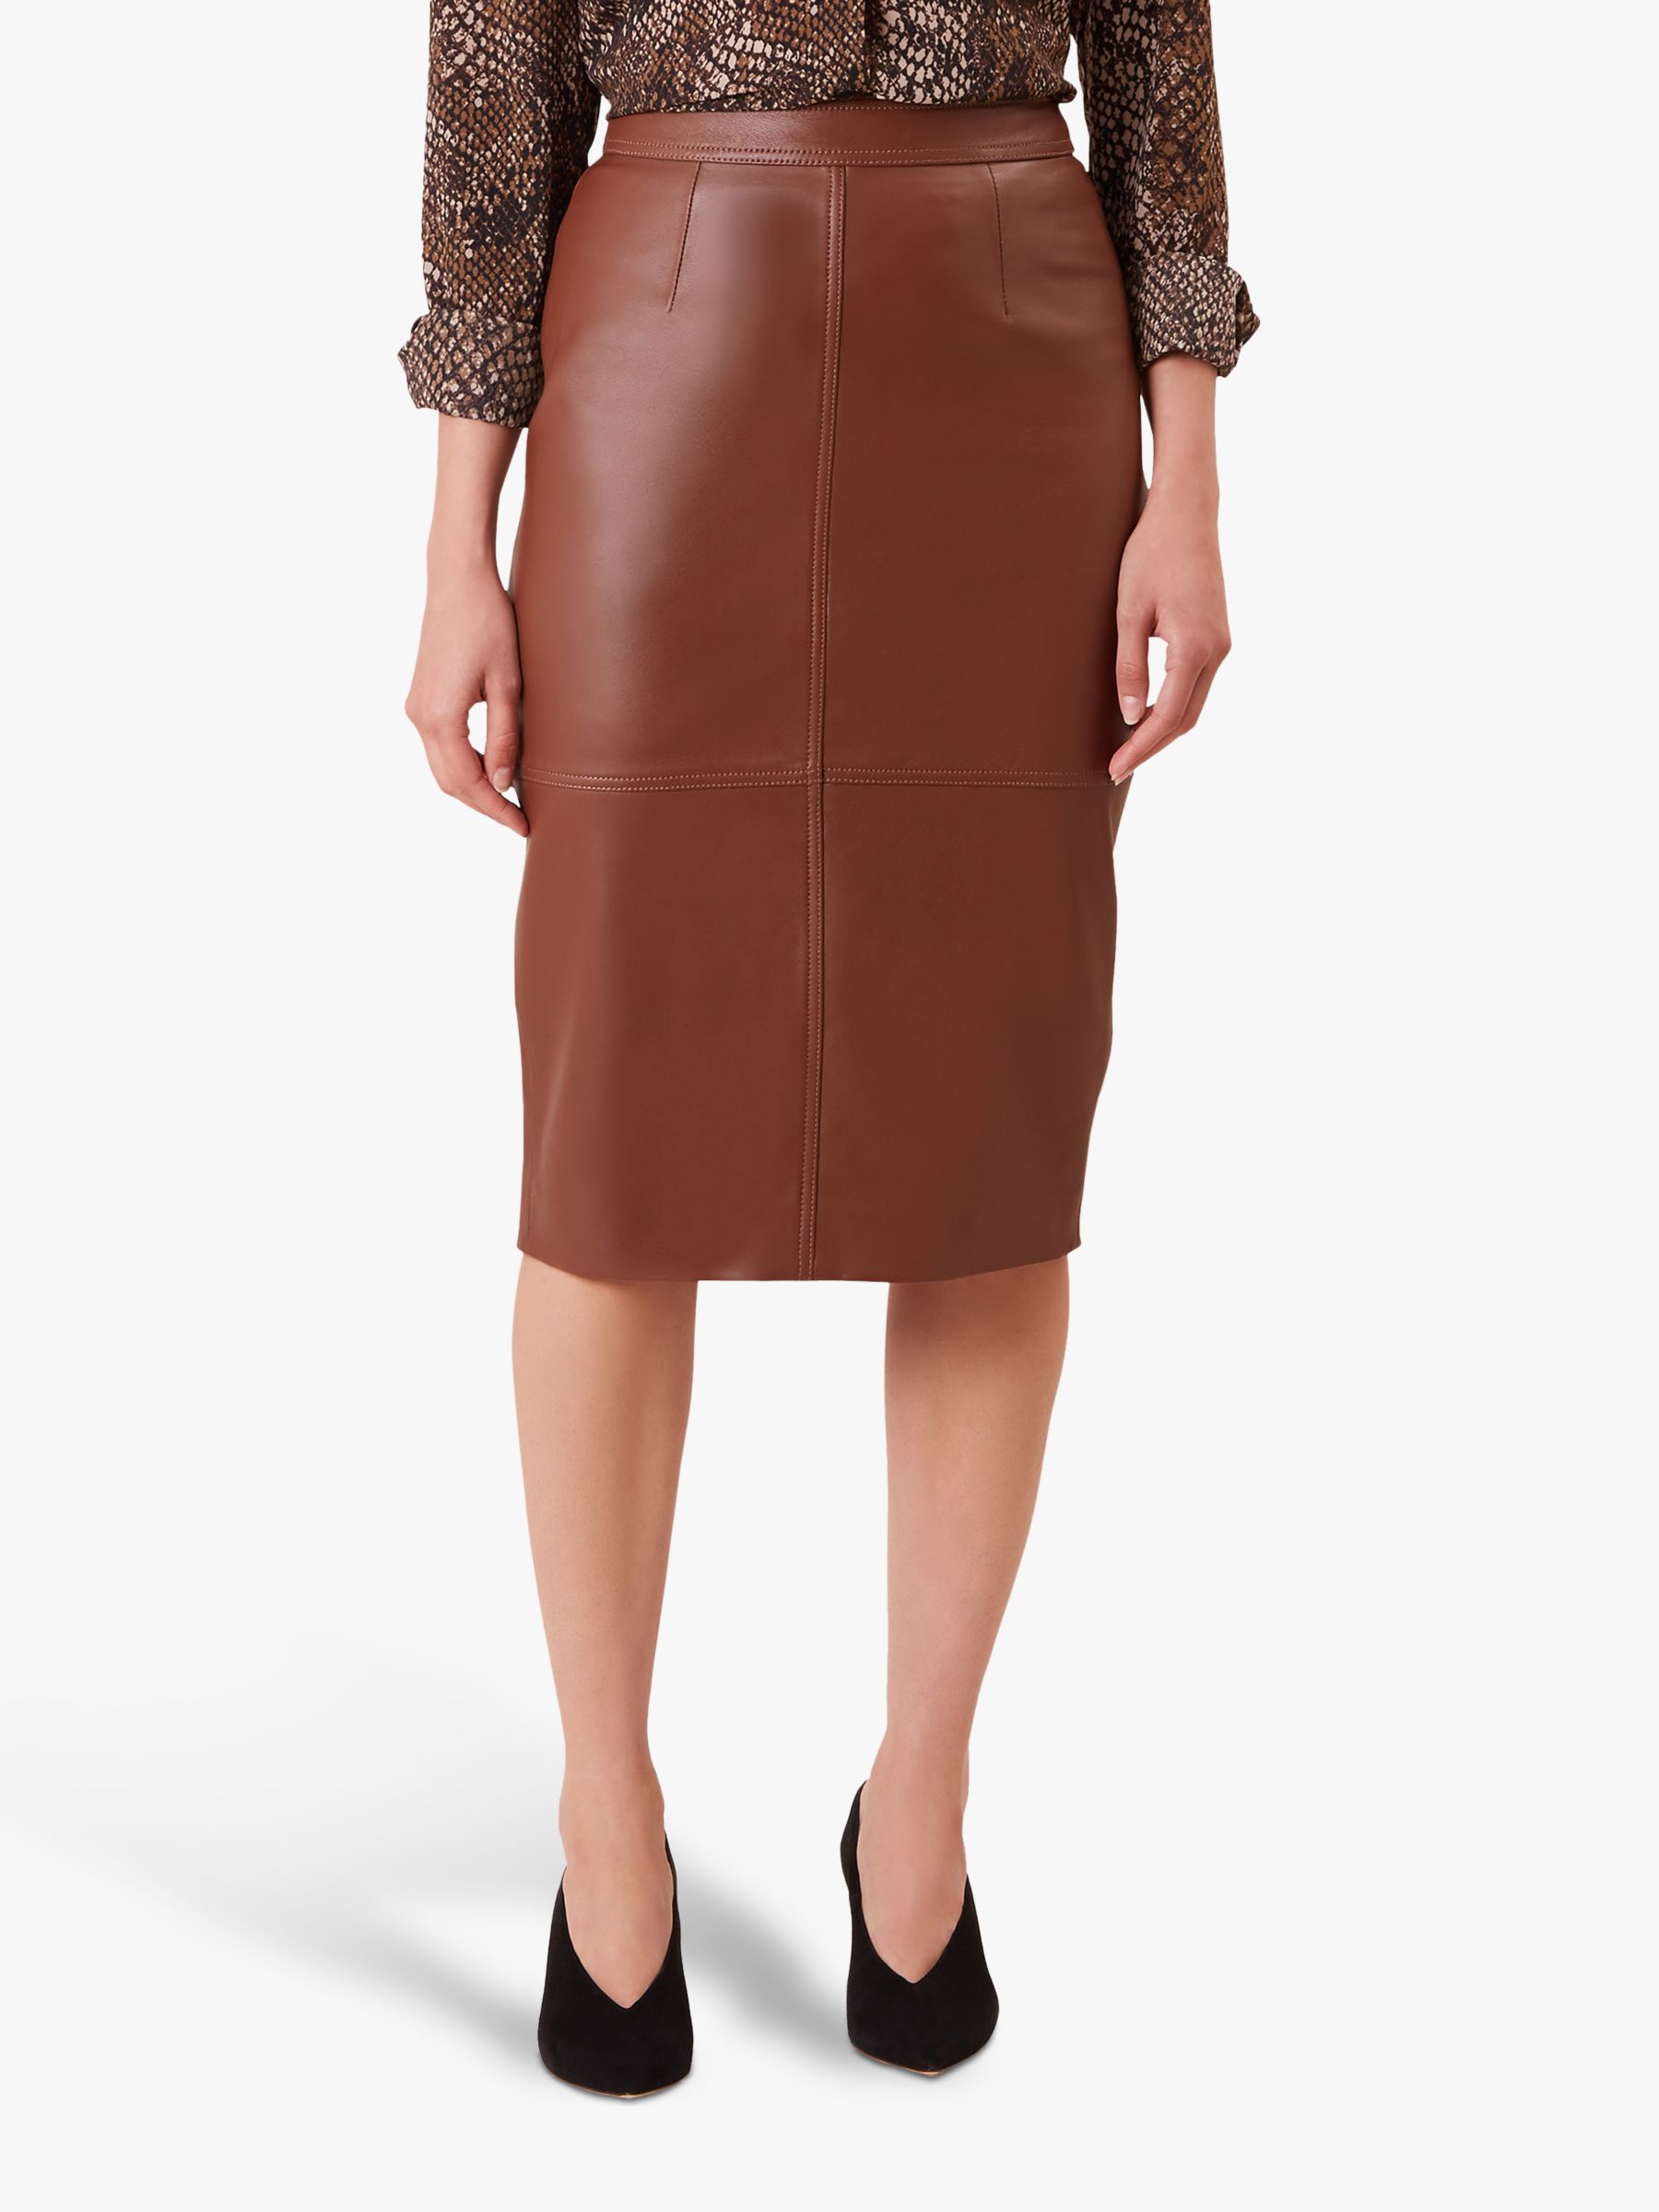 Hobbs Thea Leather Skirt, Tan